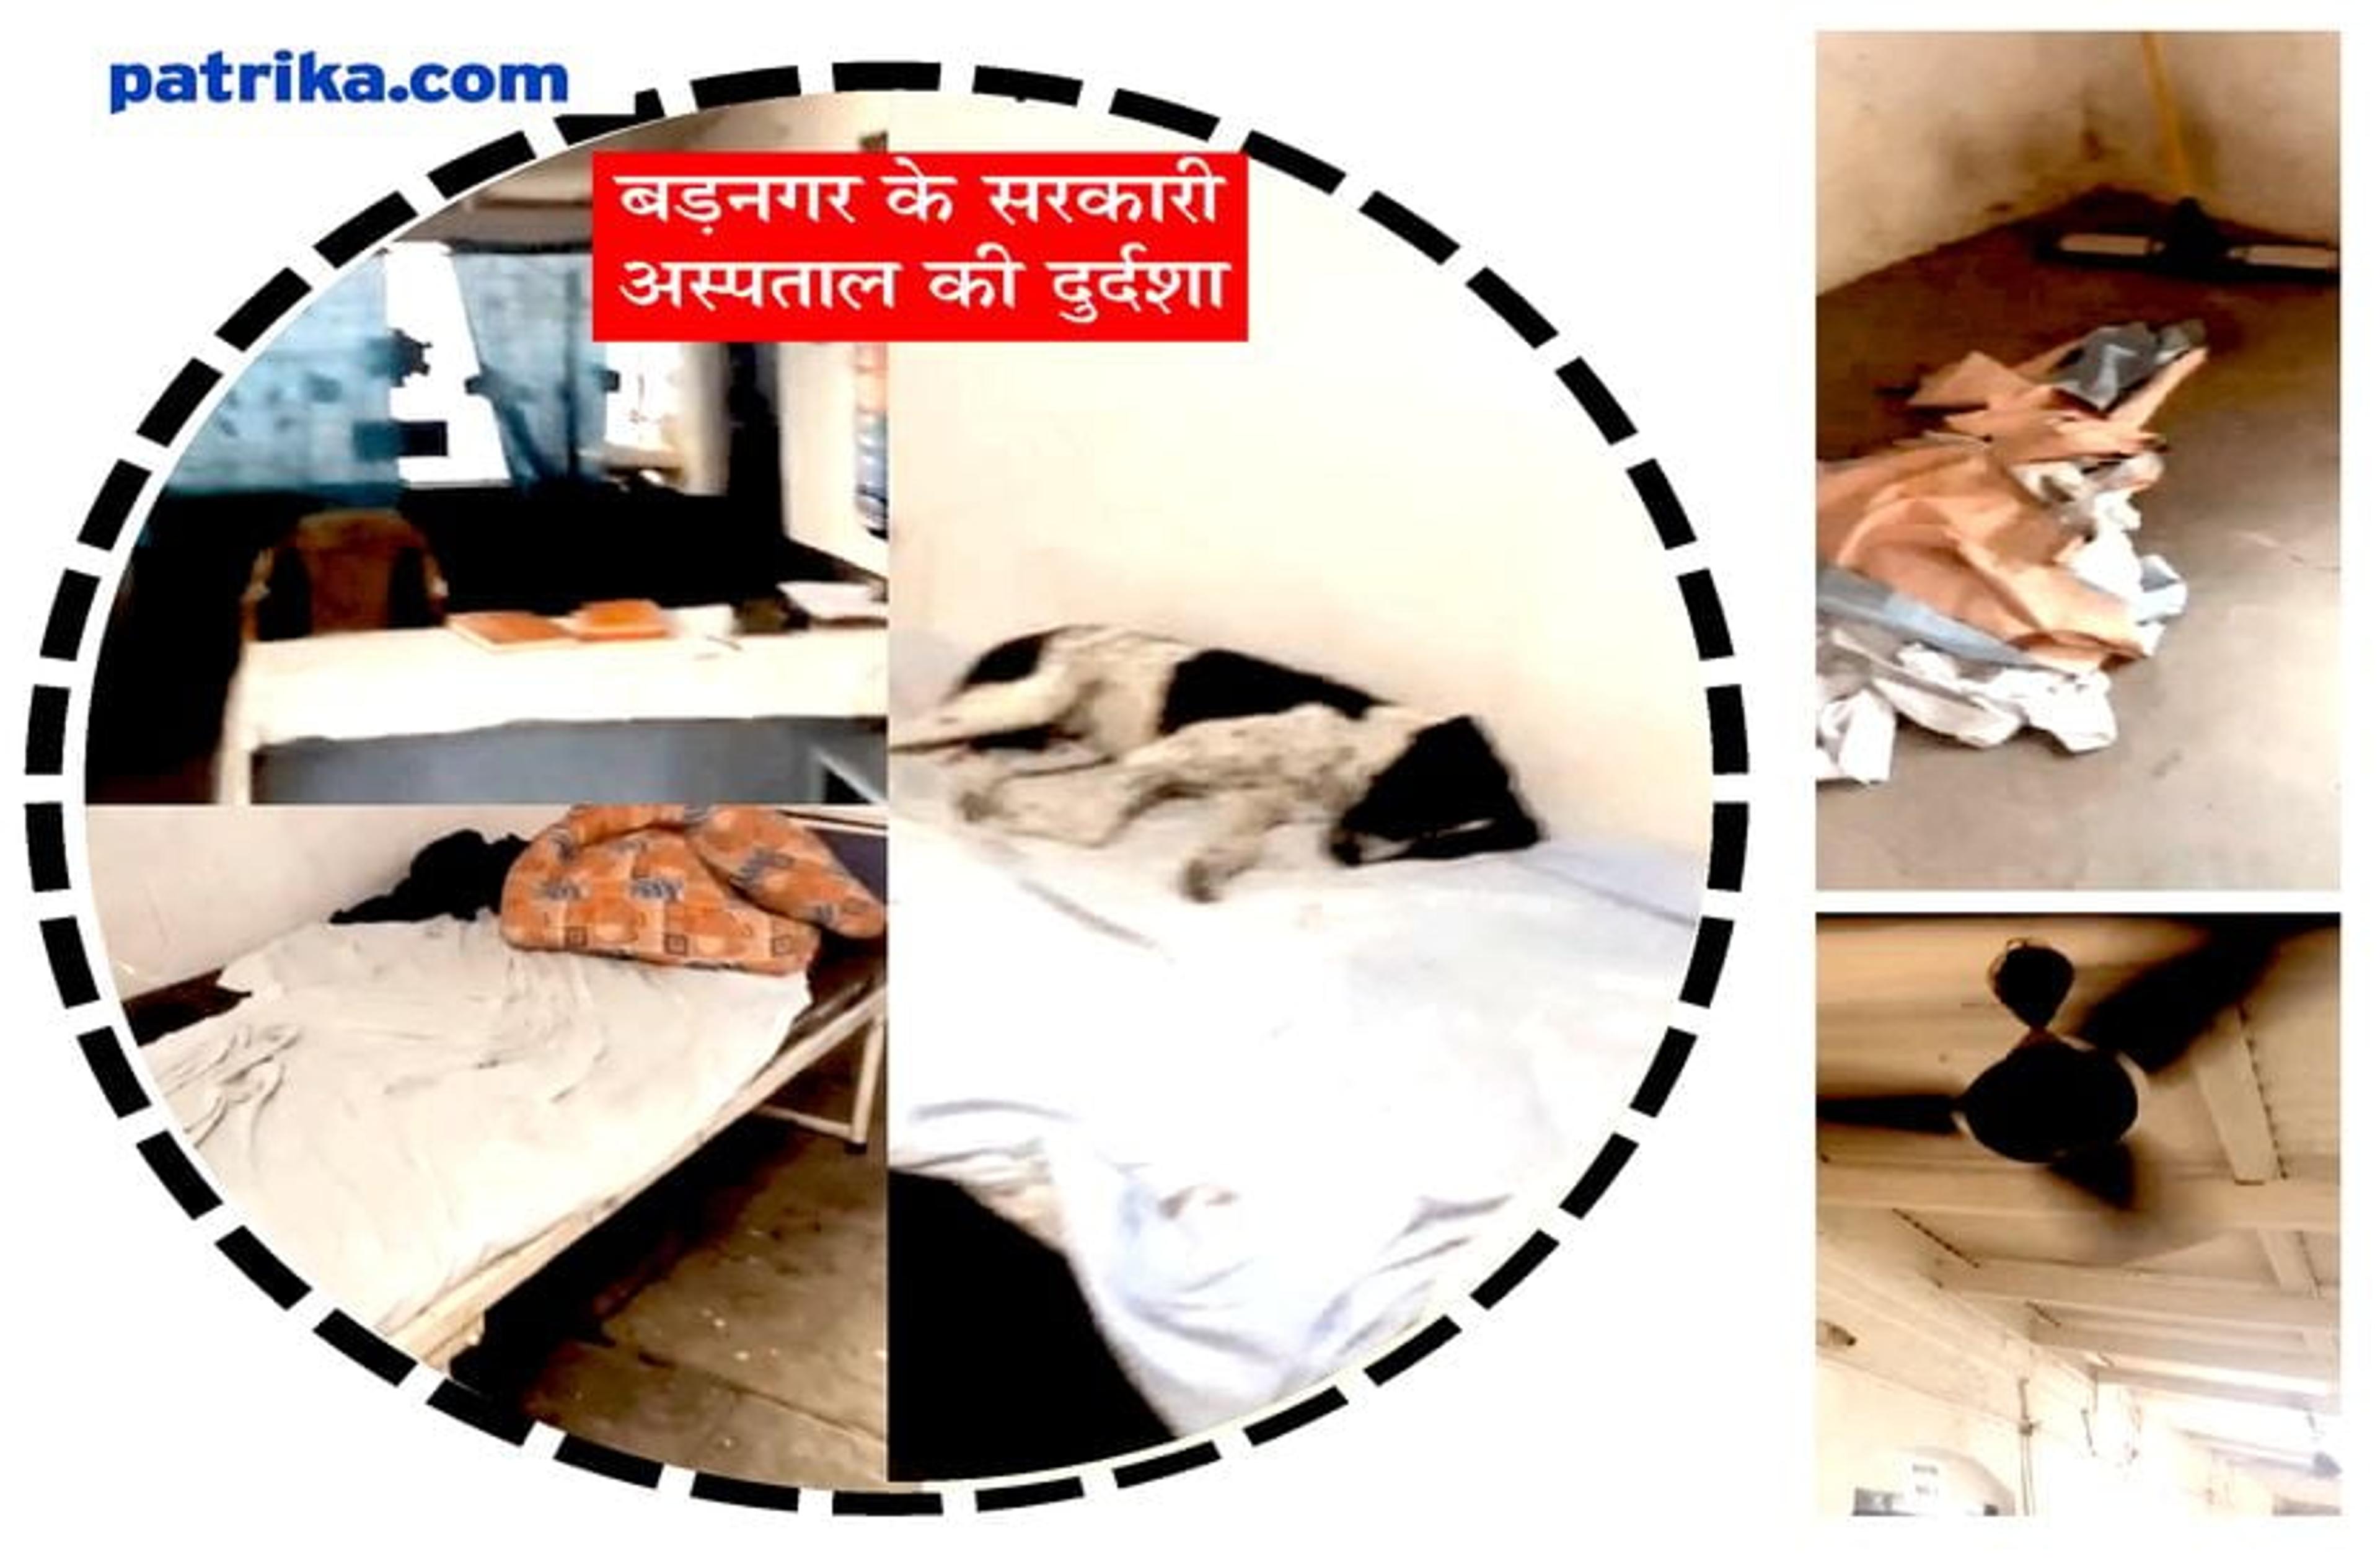 वीडियो : अस्पताल की ऐसी दशा... मरीजों के बेड पर आराम फरमा रहे श्वान